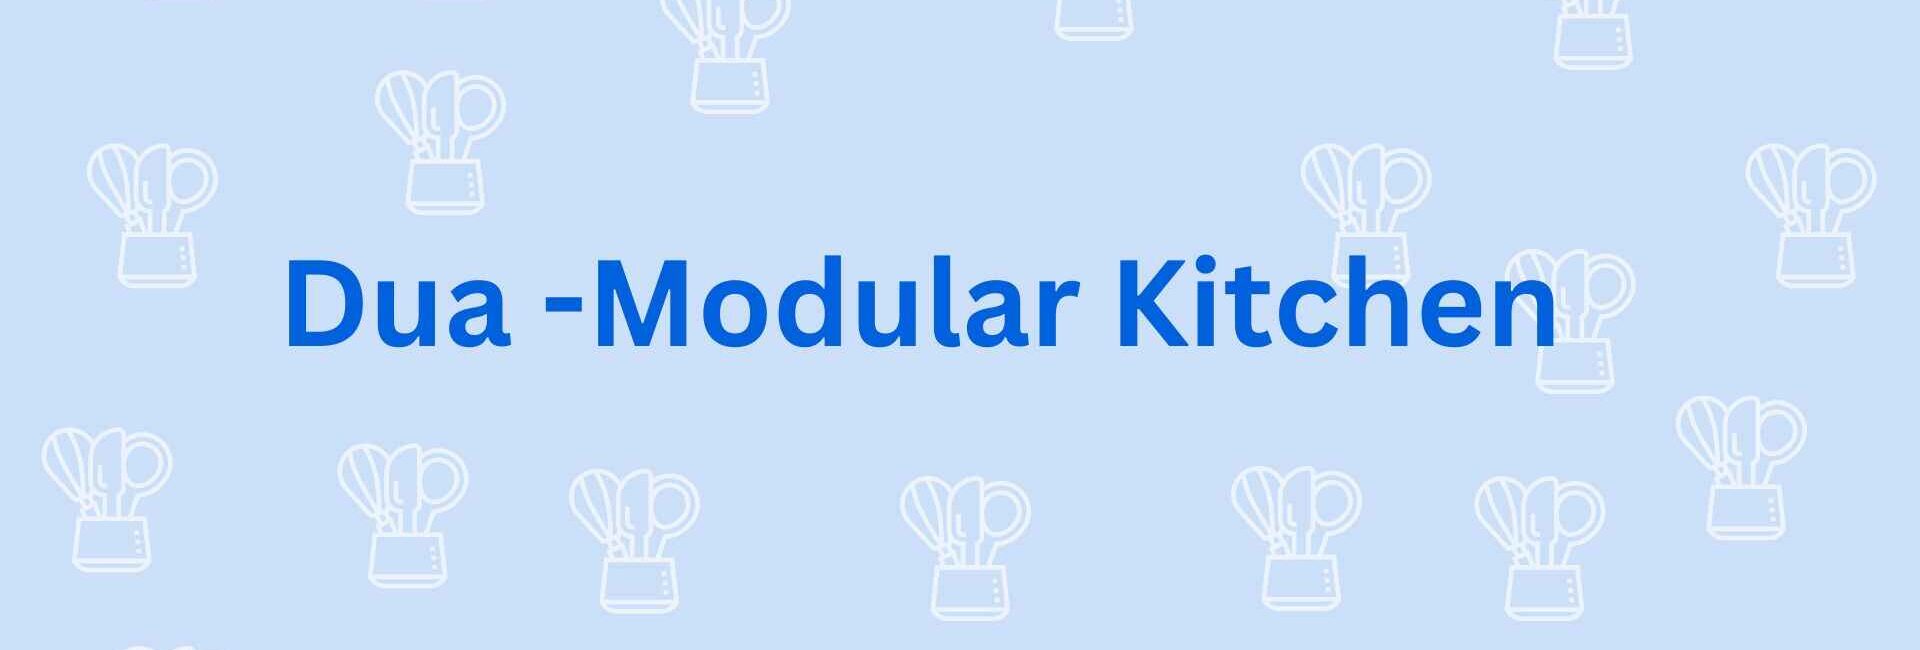 Dua -Modular Kitchen - Modular Kitchen Dealer in Noida